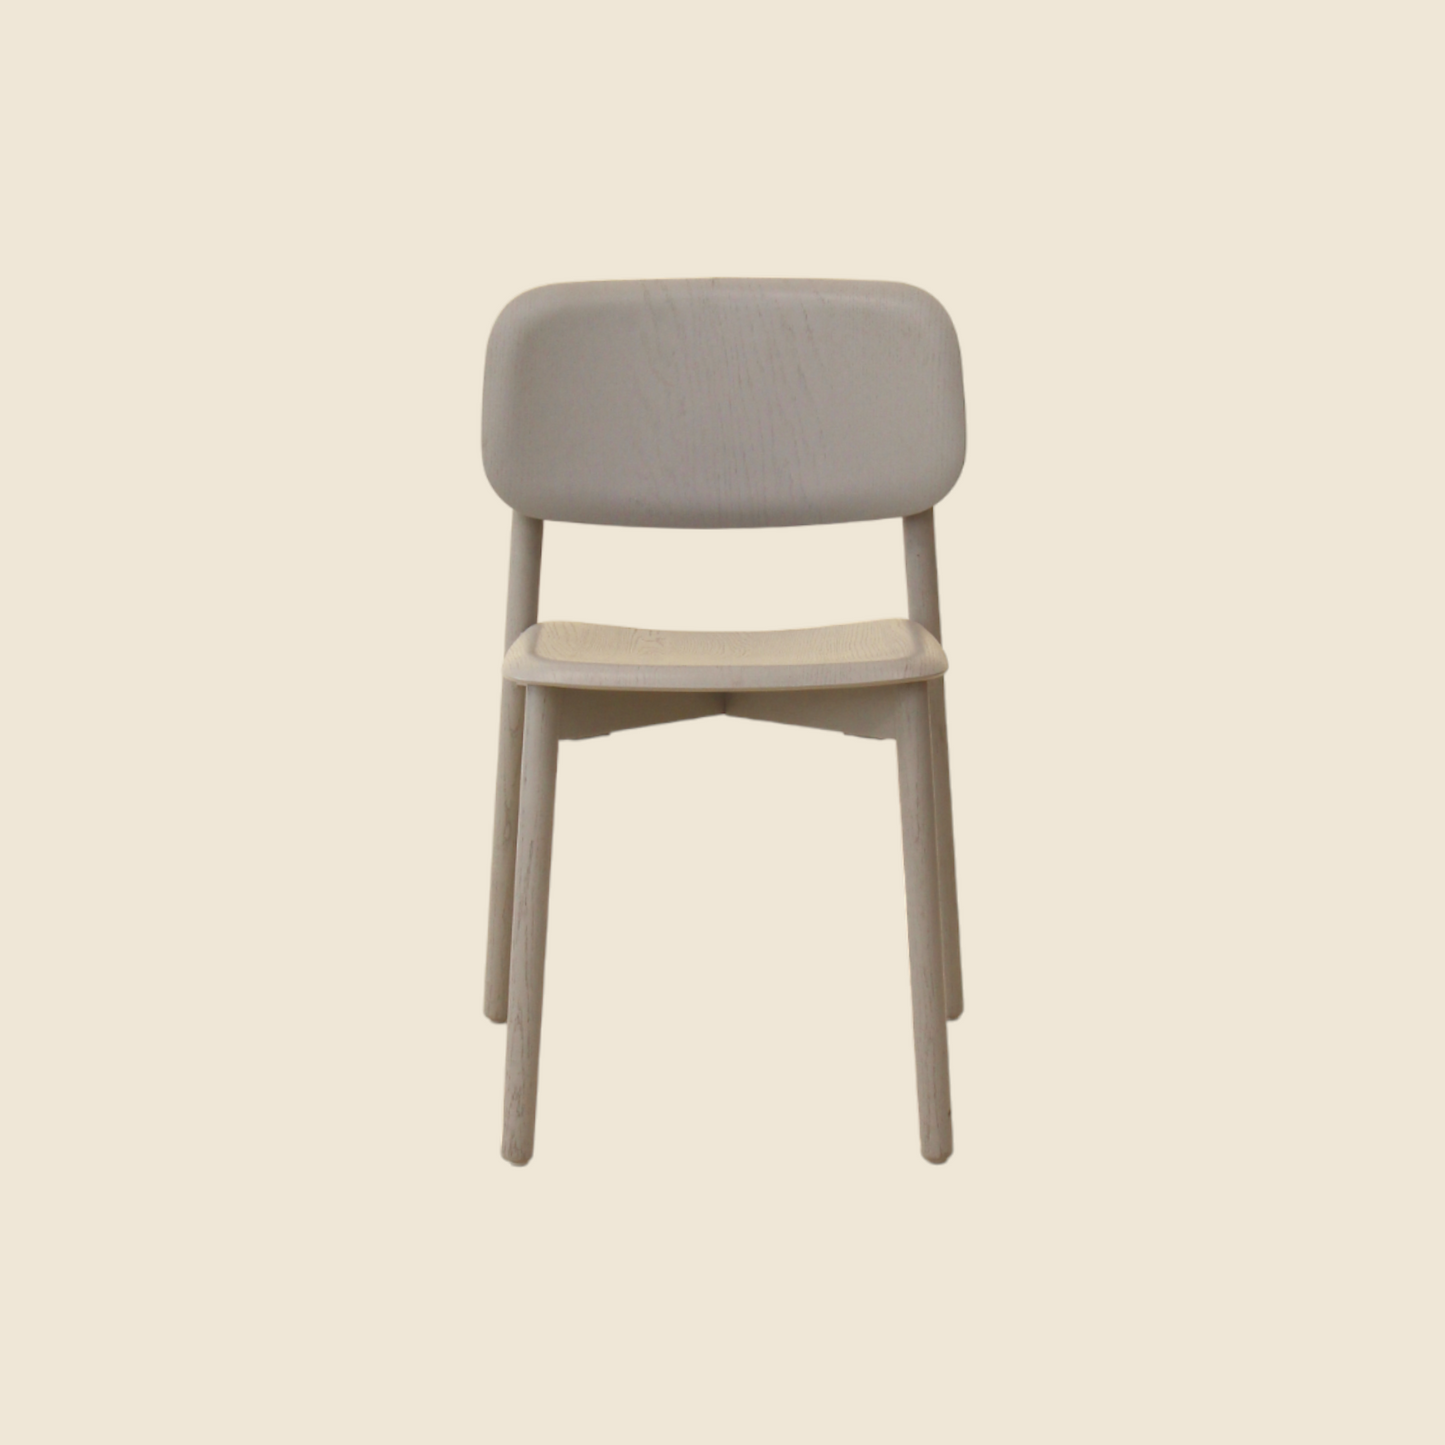 Soft Edge 12 chair